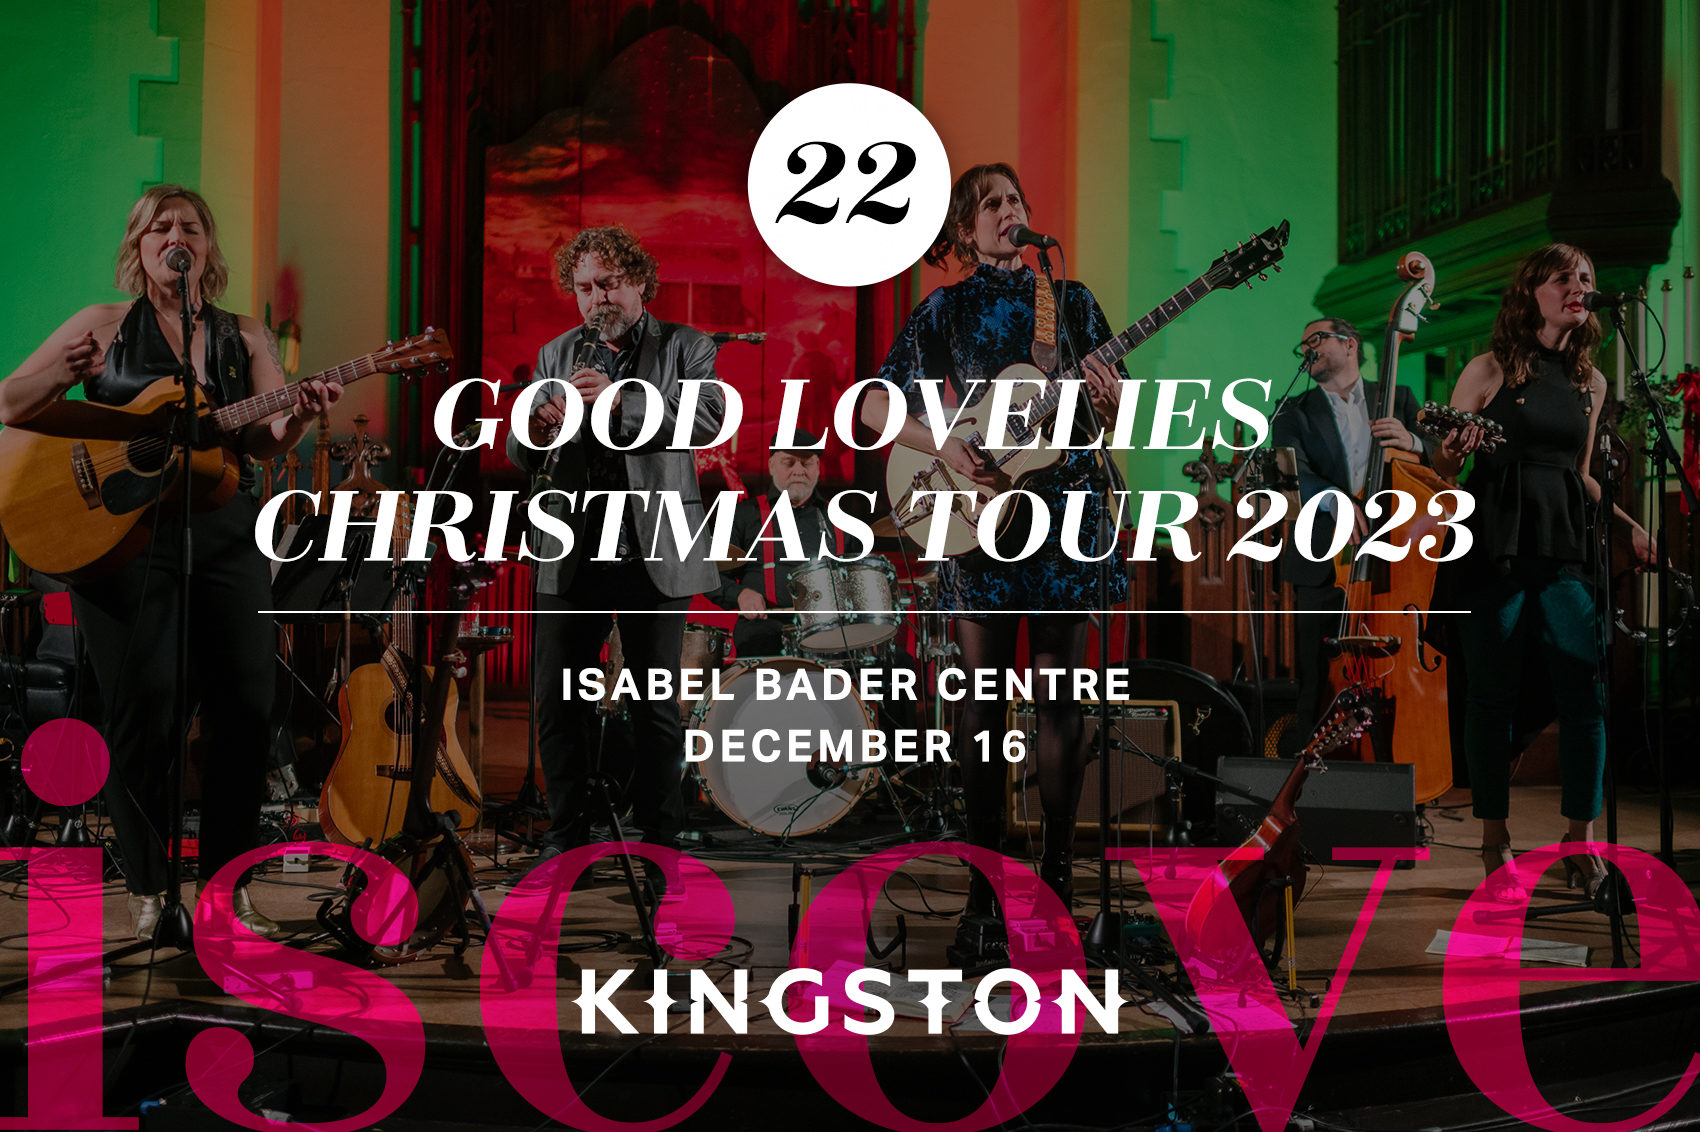 Good Lovelies Christmas Tour 2023